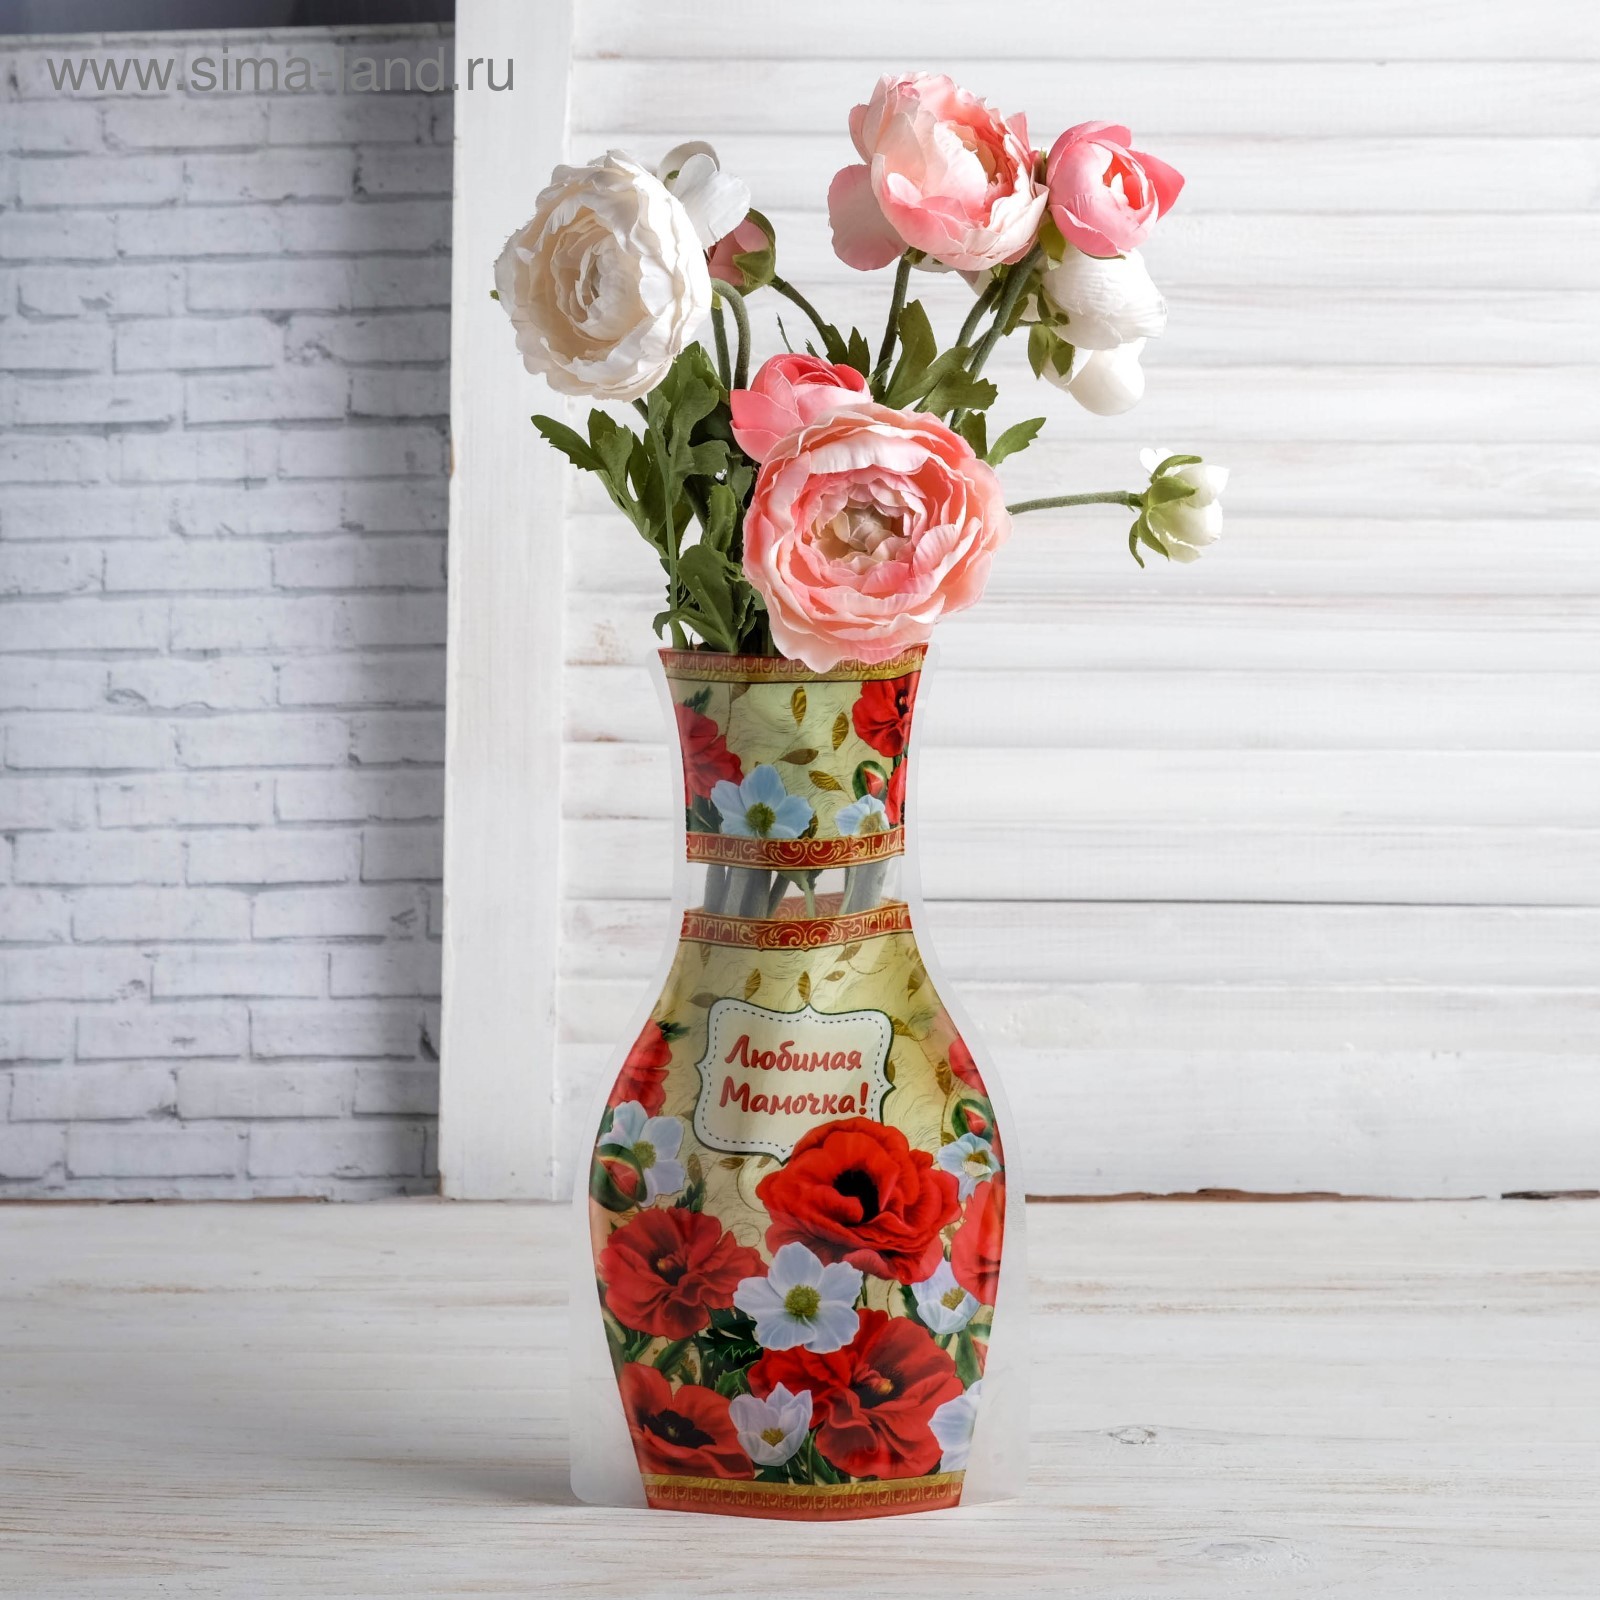 Обои в стиле вазы. Вазы для цветов. Красивые вазы. Необычные вазы для цветов. Ваза для цветов.